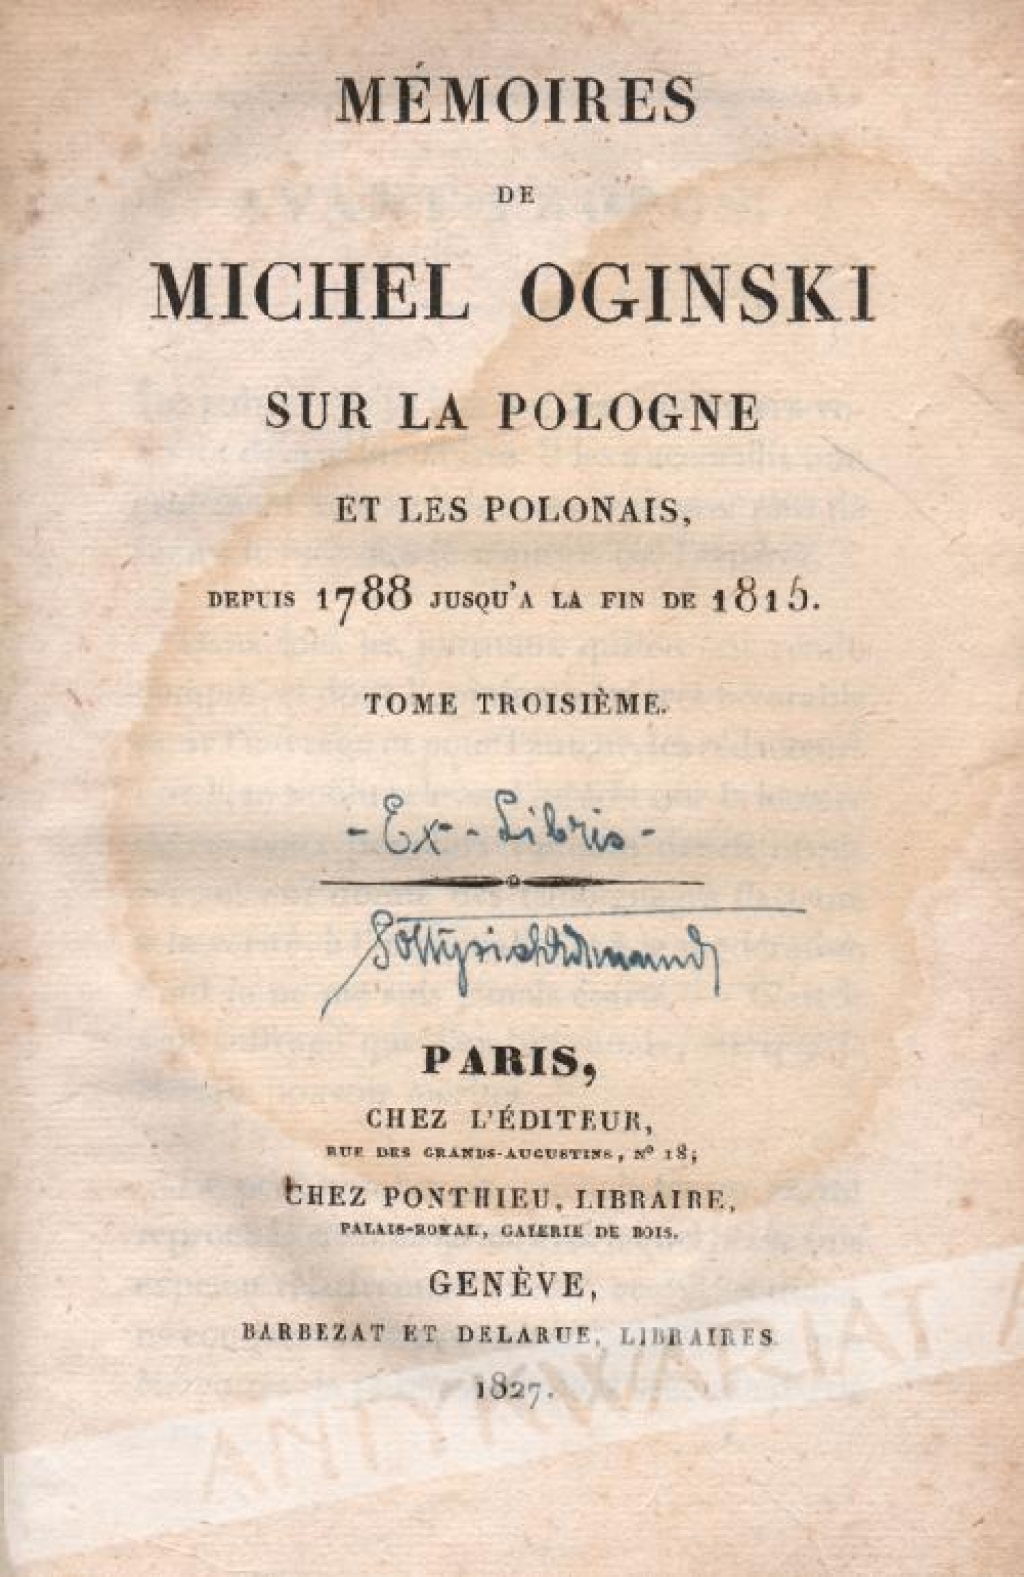 Memoires de Michel Oginski sur la Pologne et les Polonais depus 1788 jusqu'a la fin de 1815, tome III